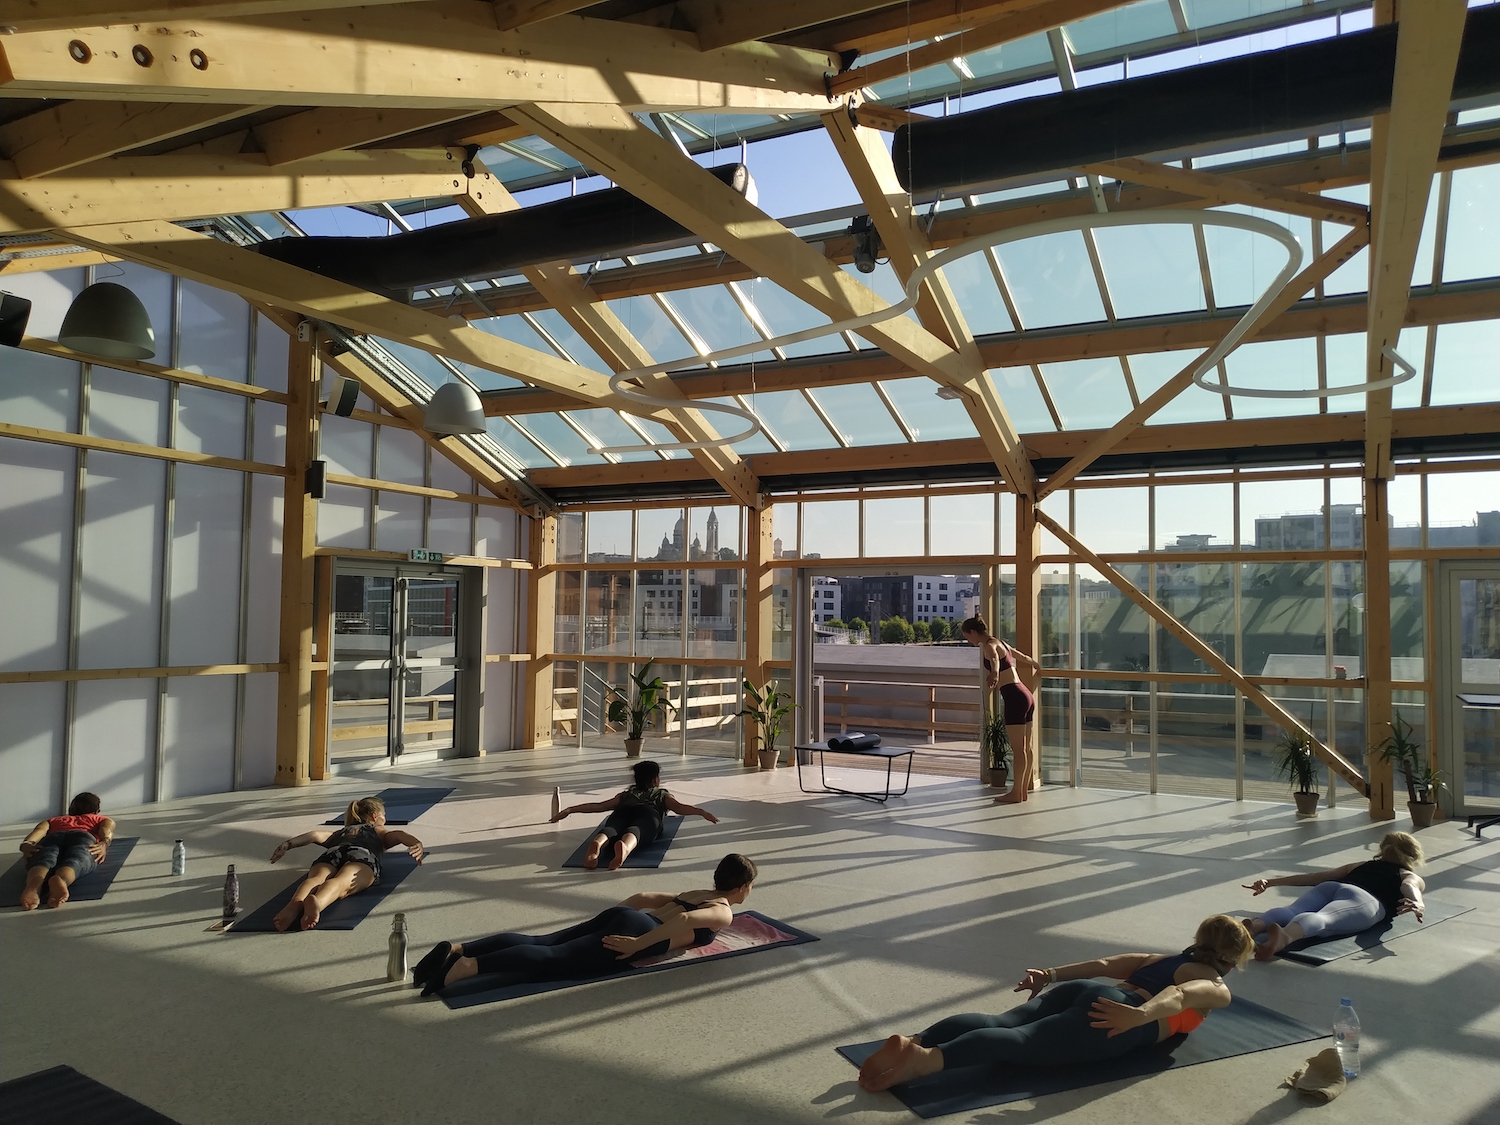 Espace evenementielle eco-resposable dans Paris, activitee yoga